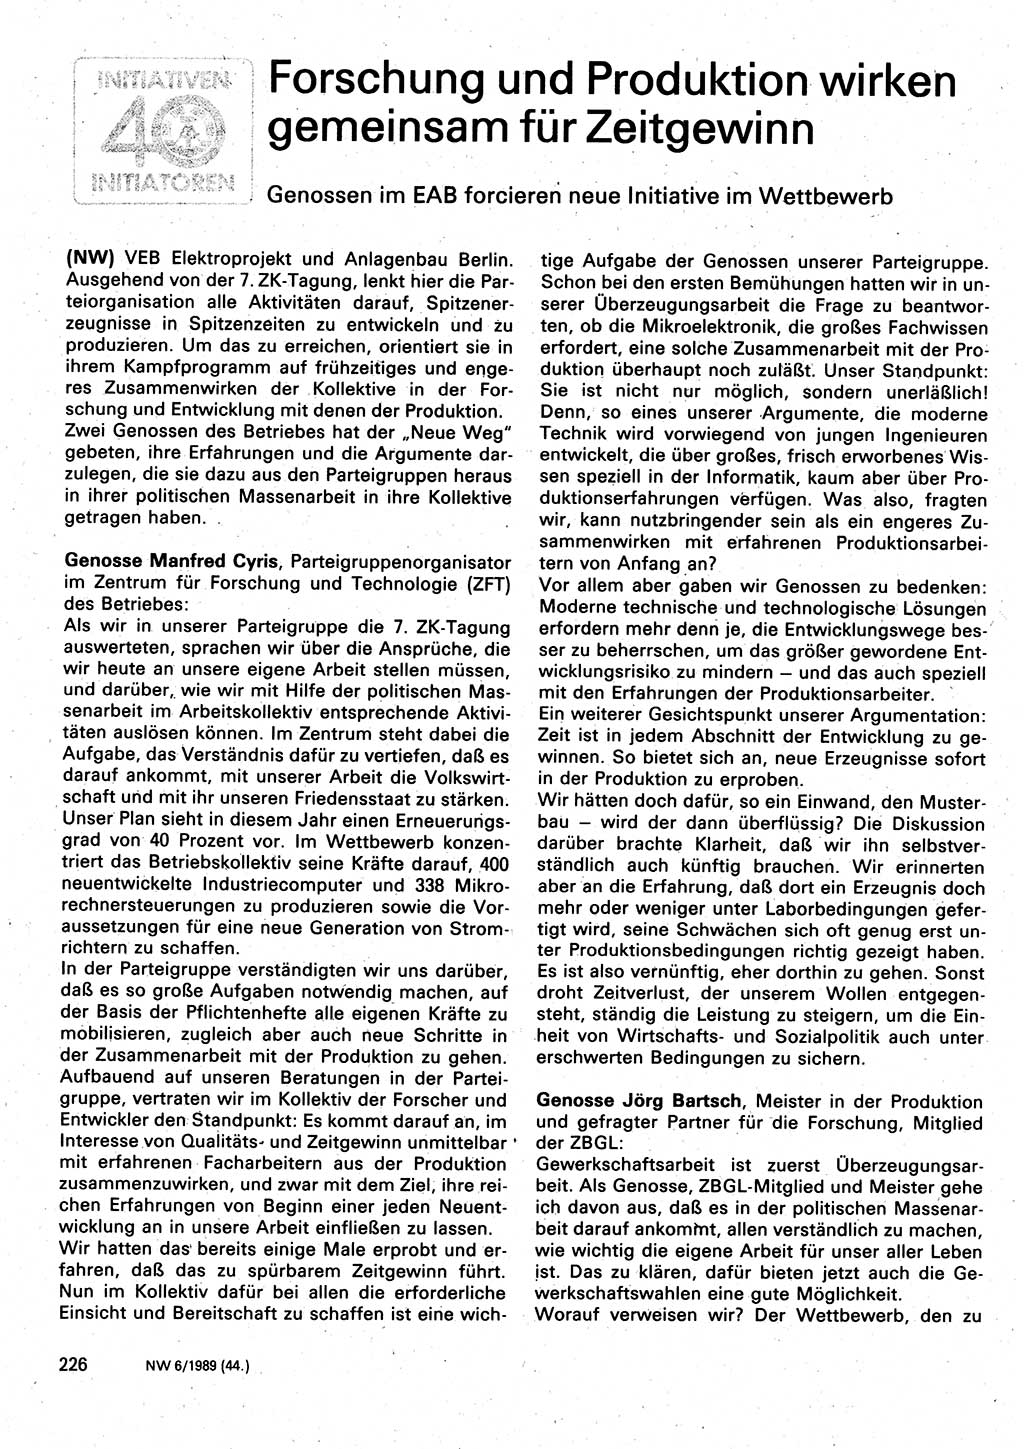 Neuer Weg (NW), Organ des Zentralkomitees (ZK) der SED (Sozialistische Einheitspartei Deutschlands) für Fragen des Parteilebens, 44. Jahrgang [Deutsche Demokratische Republik (DDR)] 1989, Seite 226 (NW ZK SED DDR 1989, S. 226)